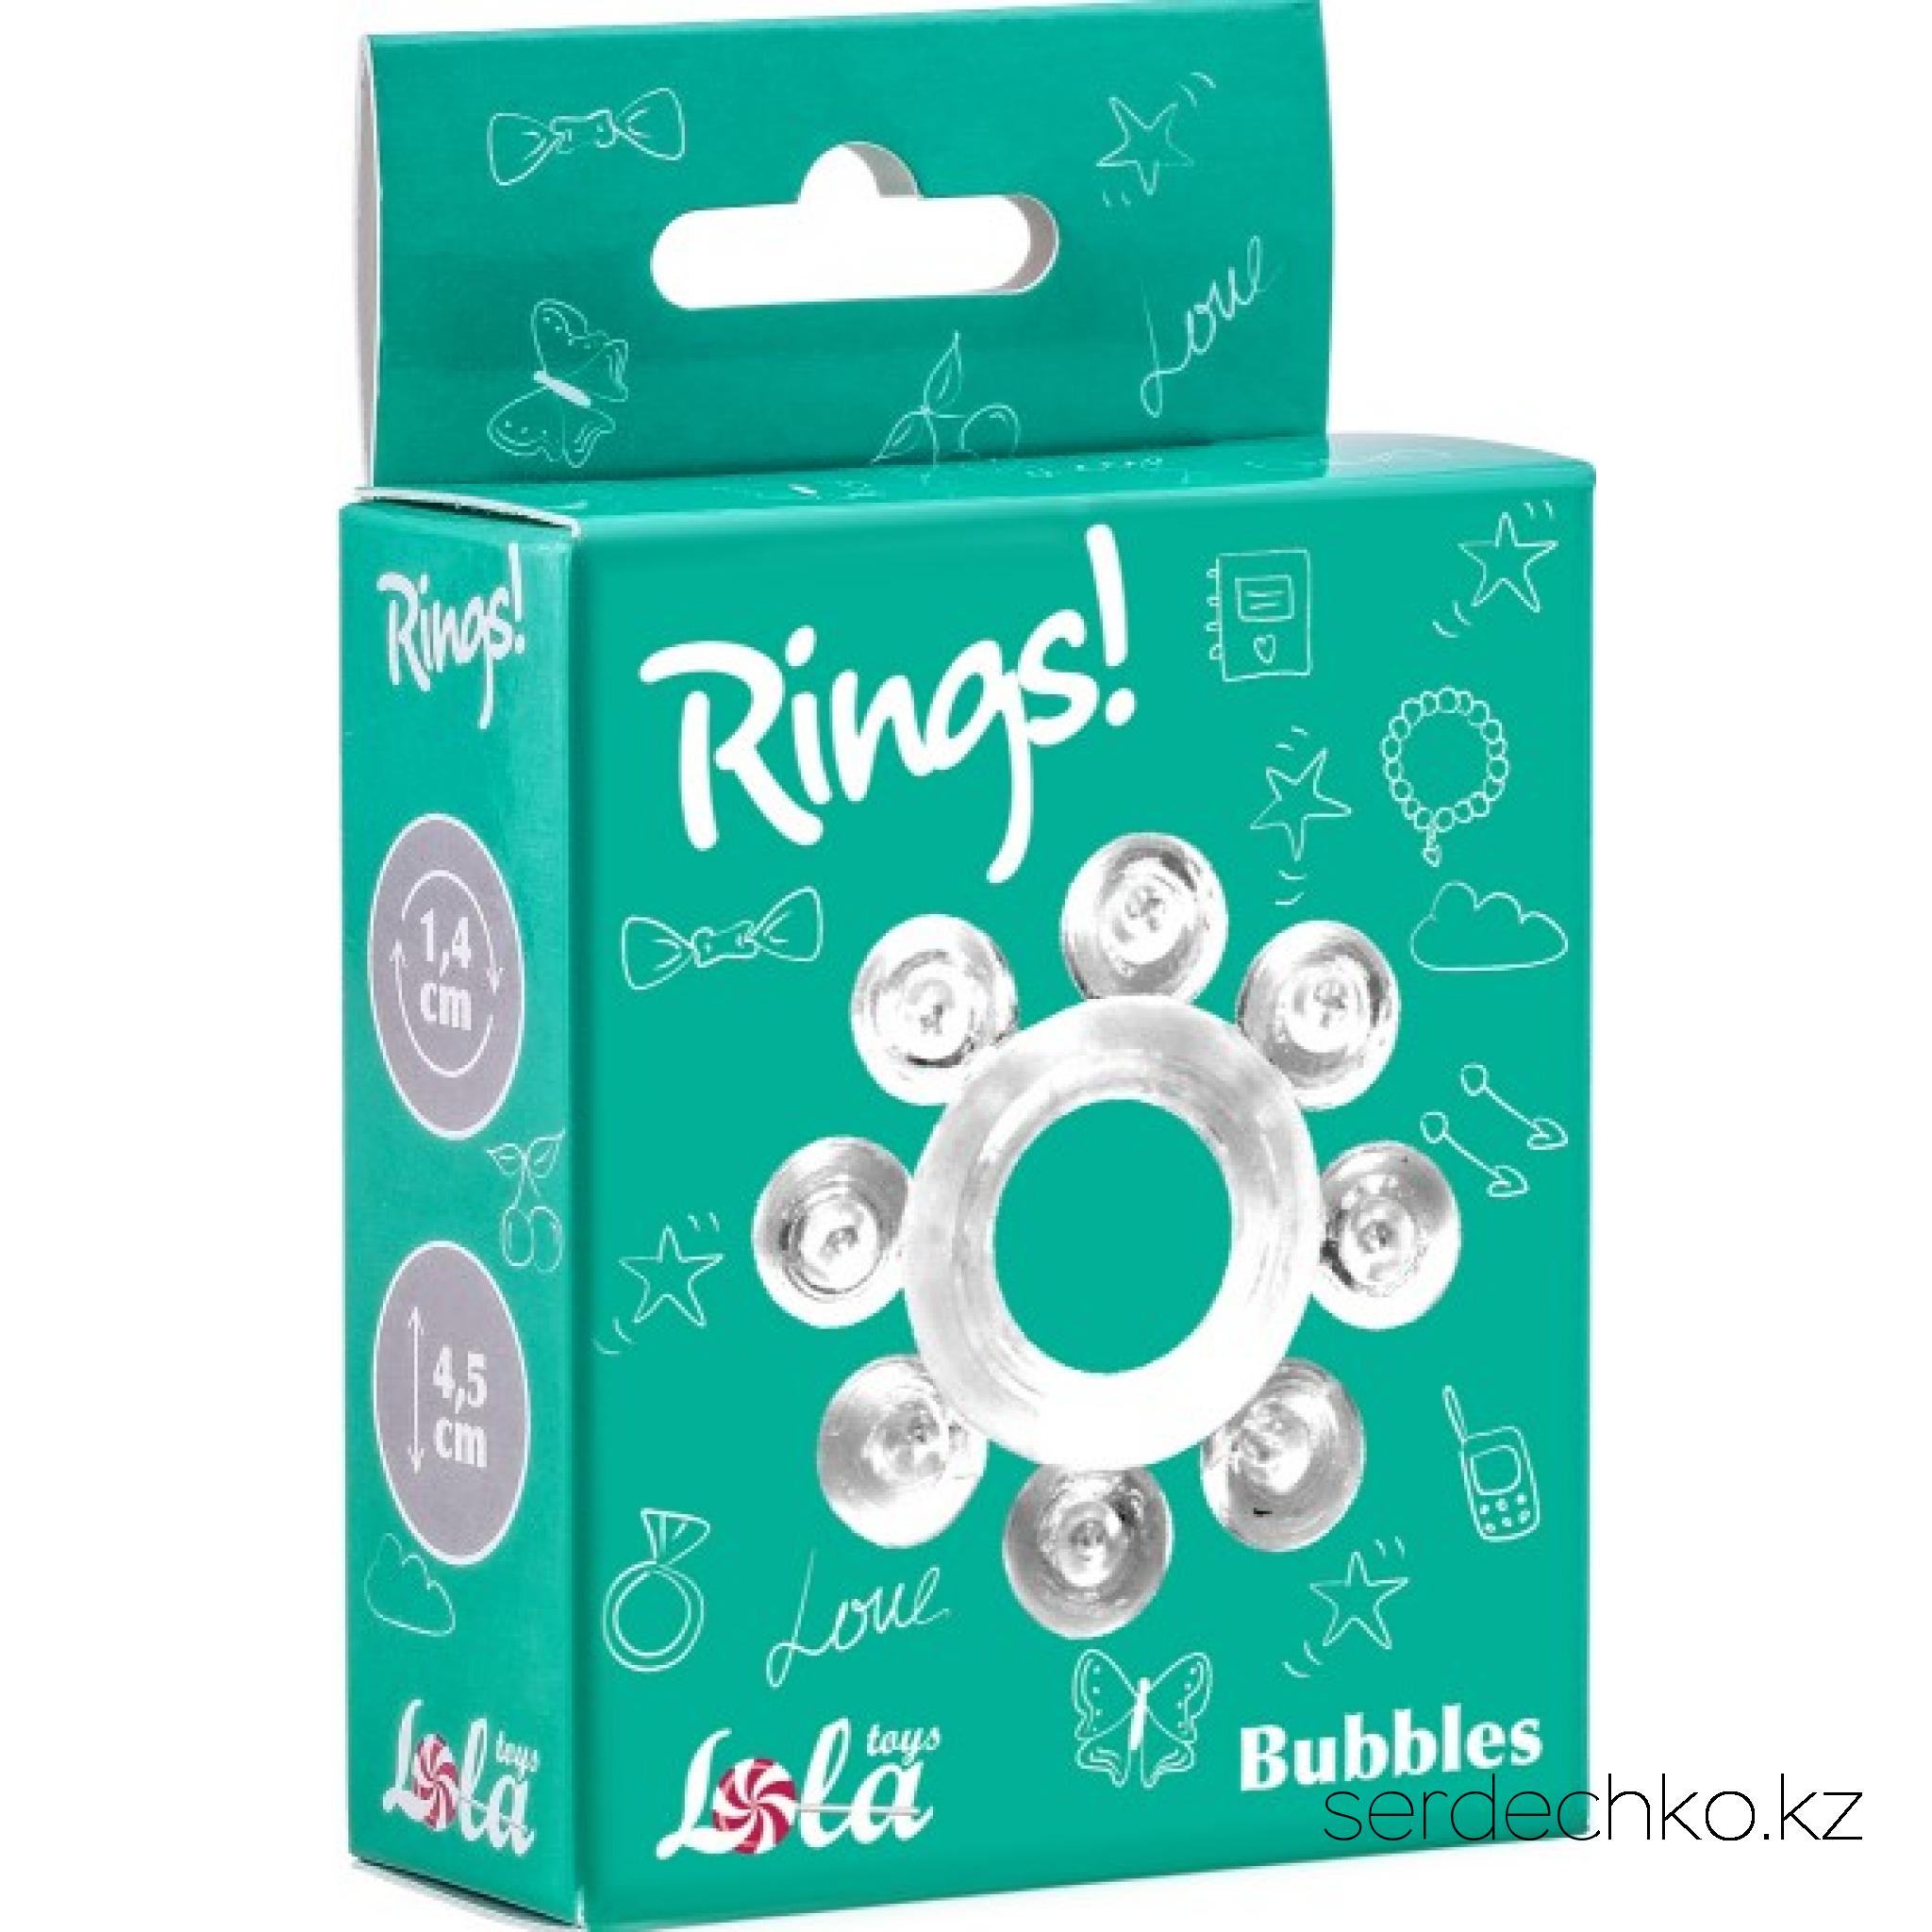 Эрекционное кольцо RINGS BUBBLES WHITE, 
	Эрекционное кольцо из серии Rings- игрушка, предназначенная исключительно для мужчин. Эластичный материал позволит крови циркулировать без риска для здоровья, сохраняя и продлевая эрекцию. Рекомендуется использовать с лубрикантом. Характеристики: общая длина- 4,5 см, ширина- 2 см, диаметр- 2,2 см, диаметр отверстия- 1,4 см. Упаковка: картонная коробка с принтом.
